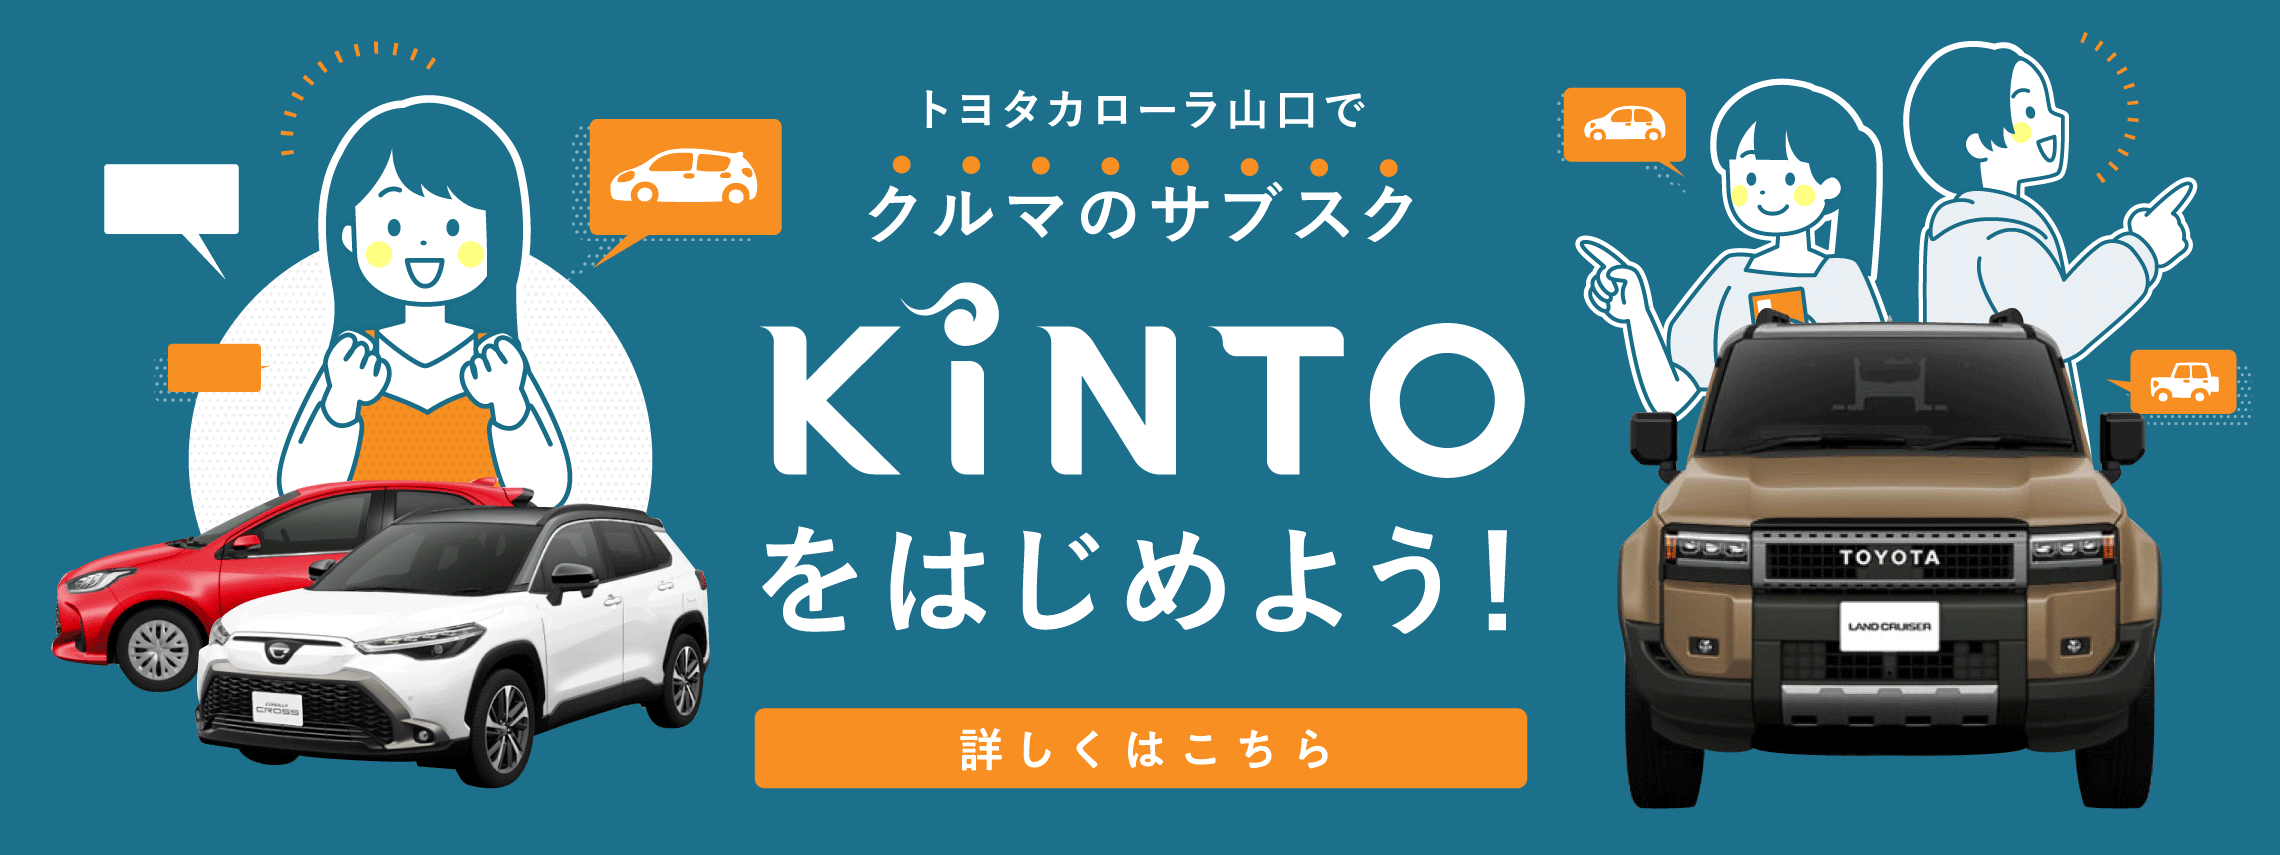 トヨタカローラ山口_KINTO